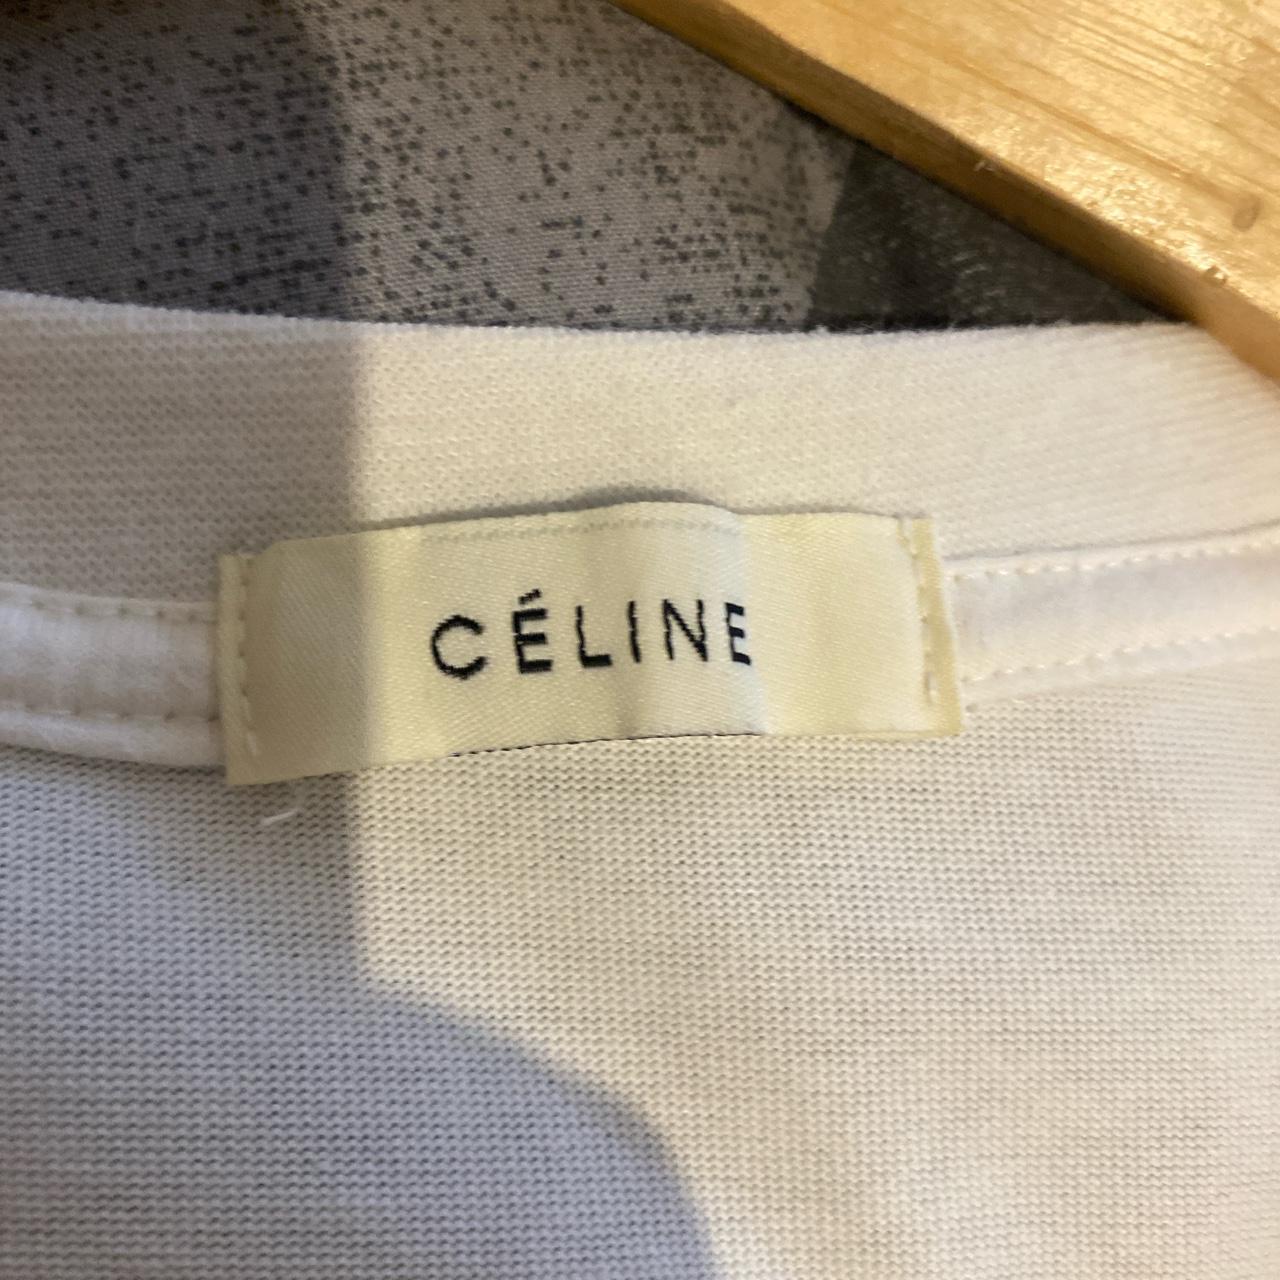 Authentic CELINE shirt Size large - Depop